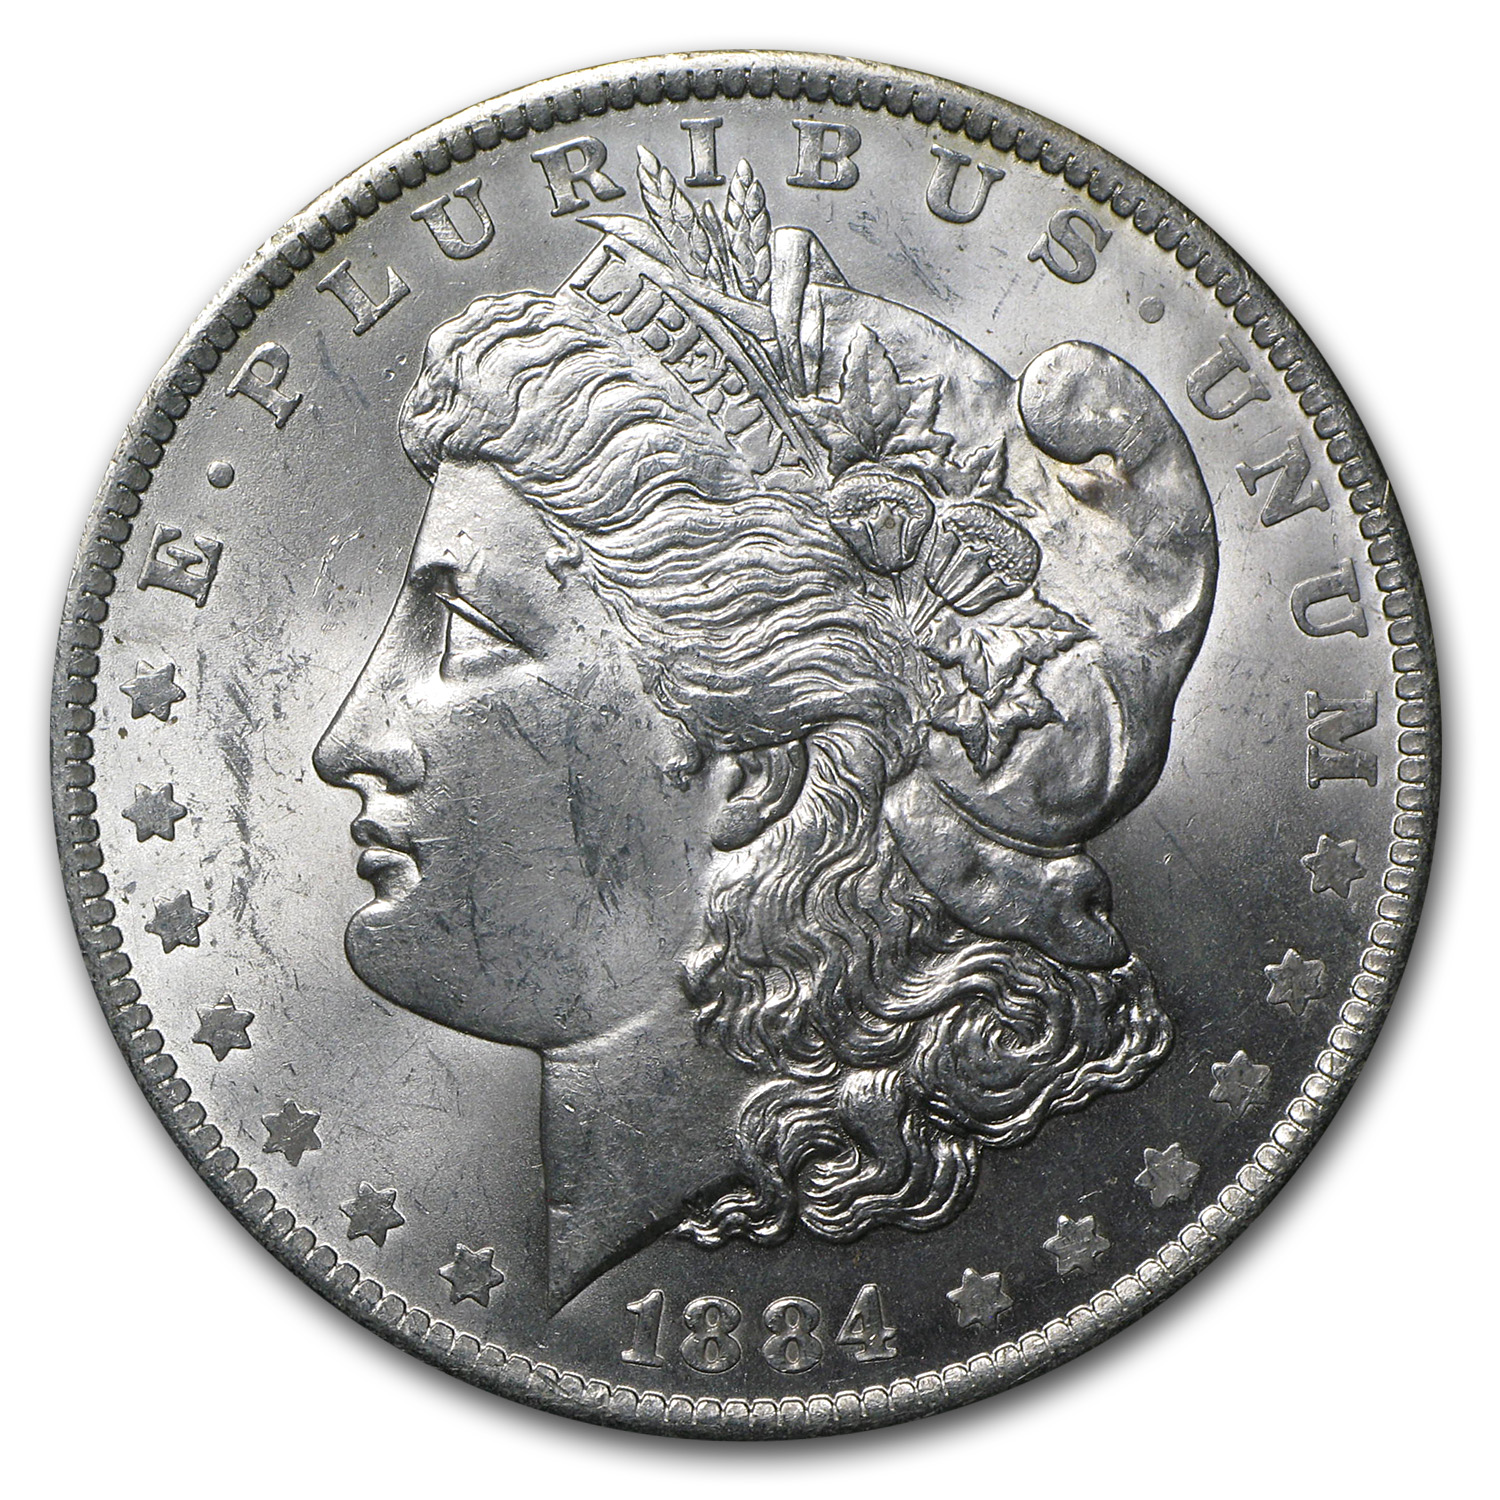 Buy 1884-O Morgan Dollar BU